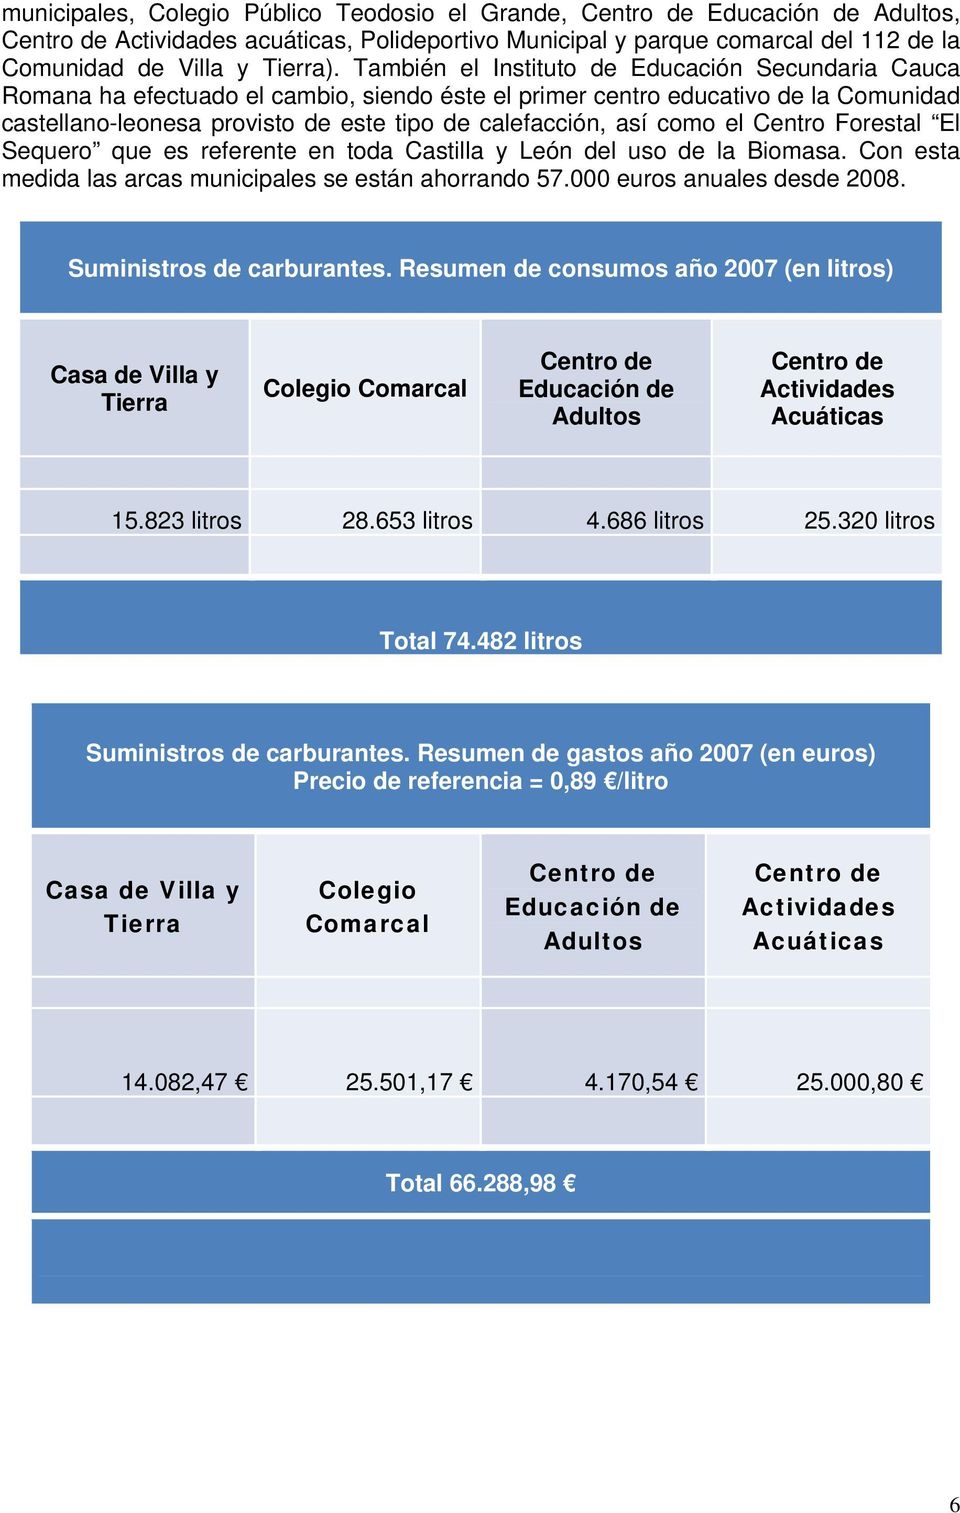 como el Centro Forestal El Sequero que es referente en toda Castilla y León del uso de la Biomasa. Con esta medida las arcas municipales se están ahorrando 57.000 euros anuales desde 2008.